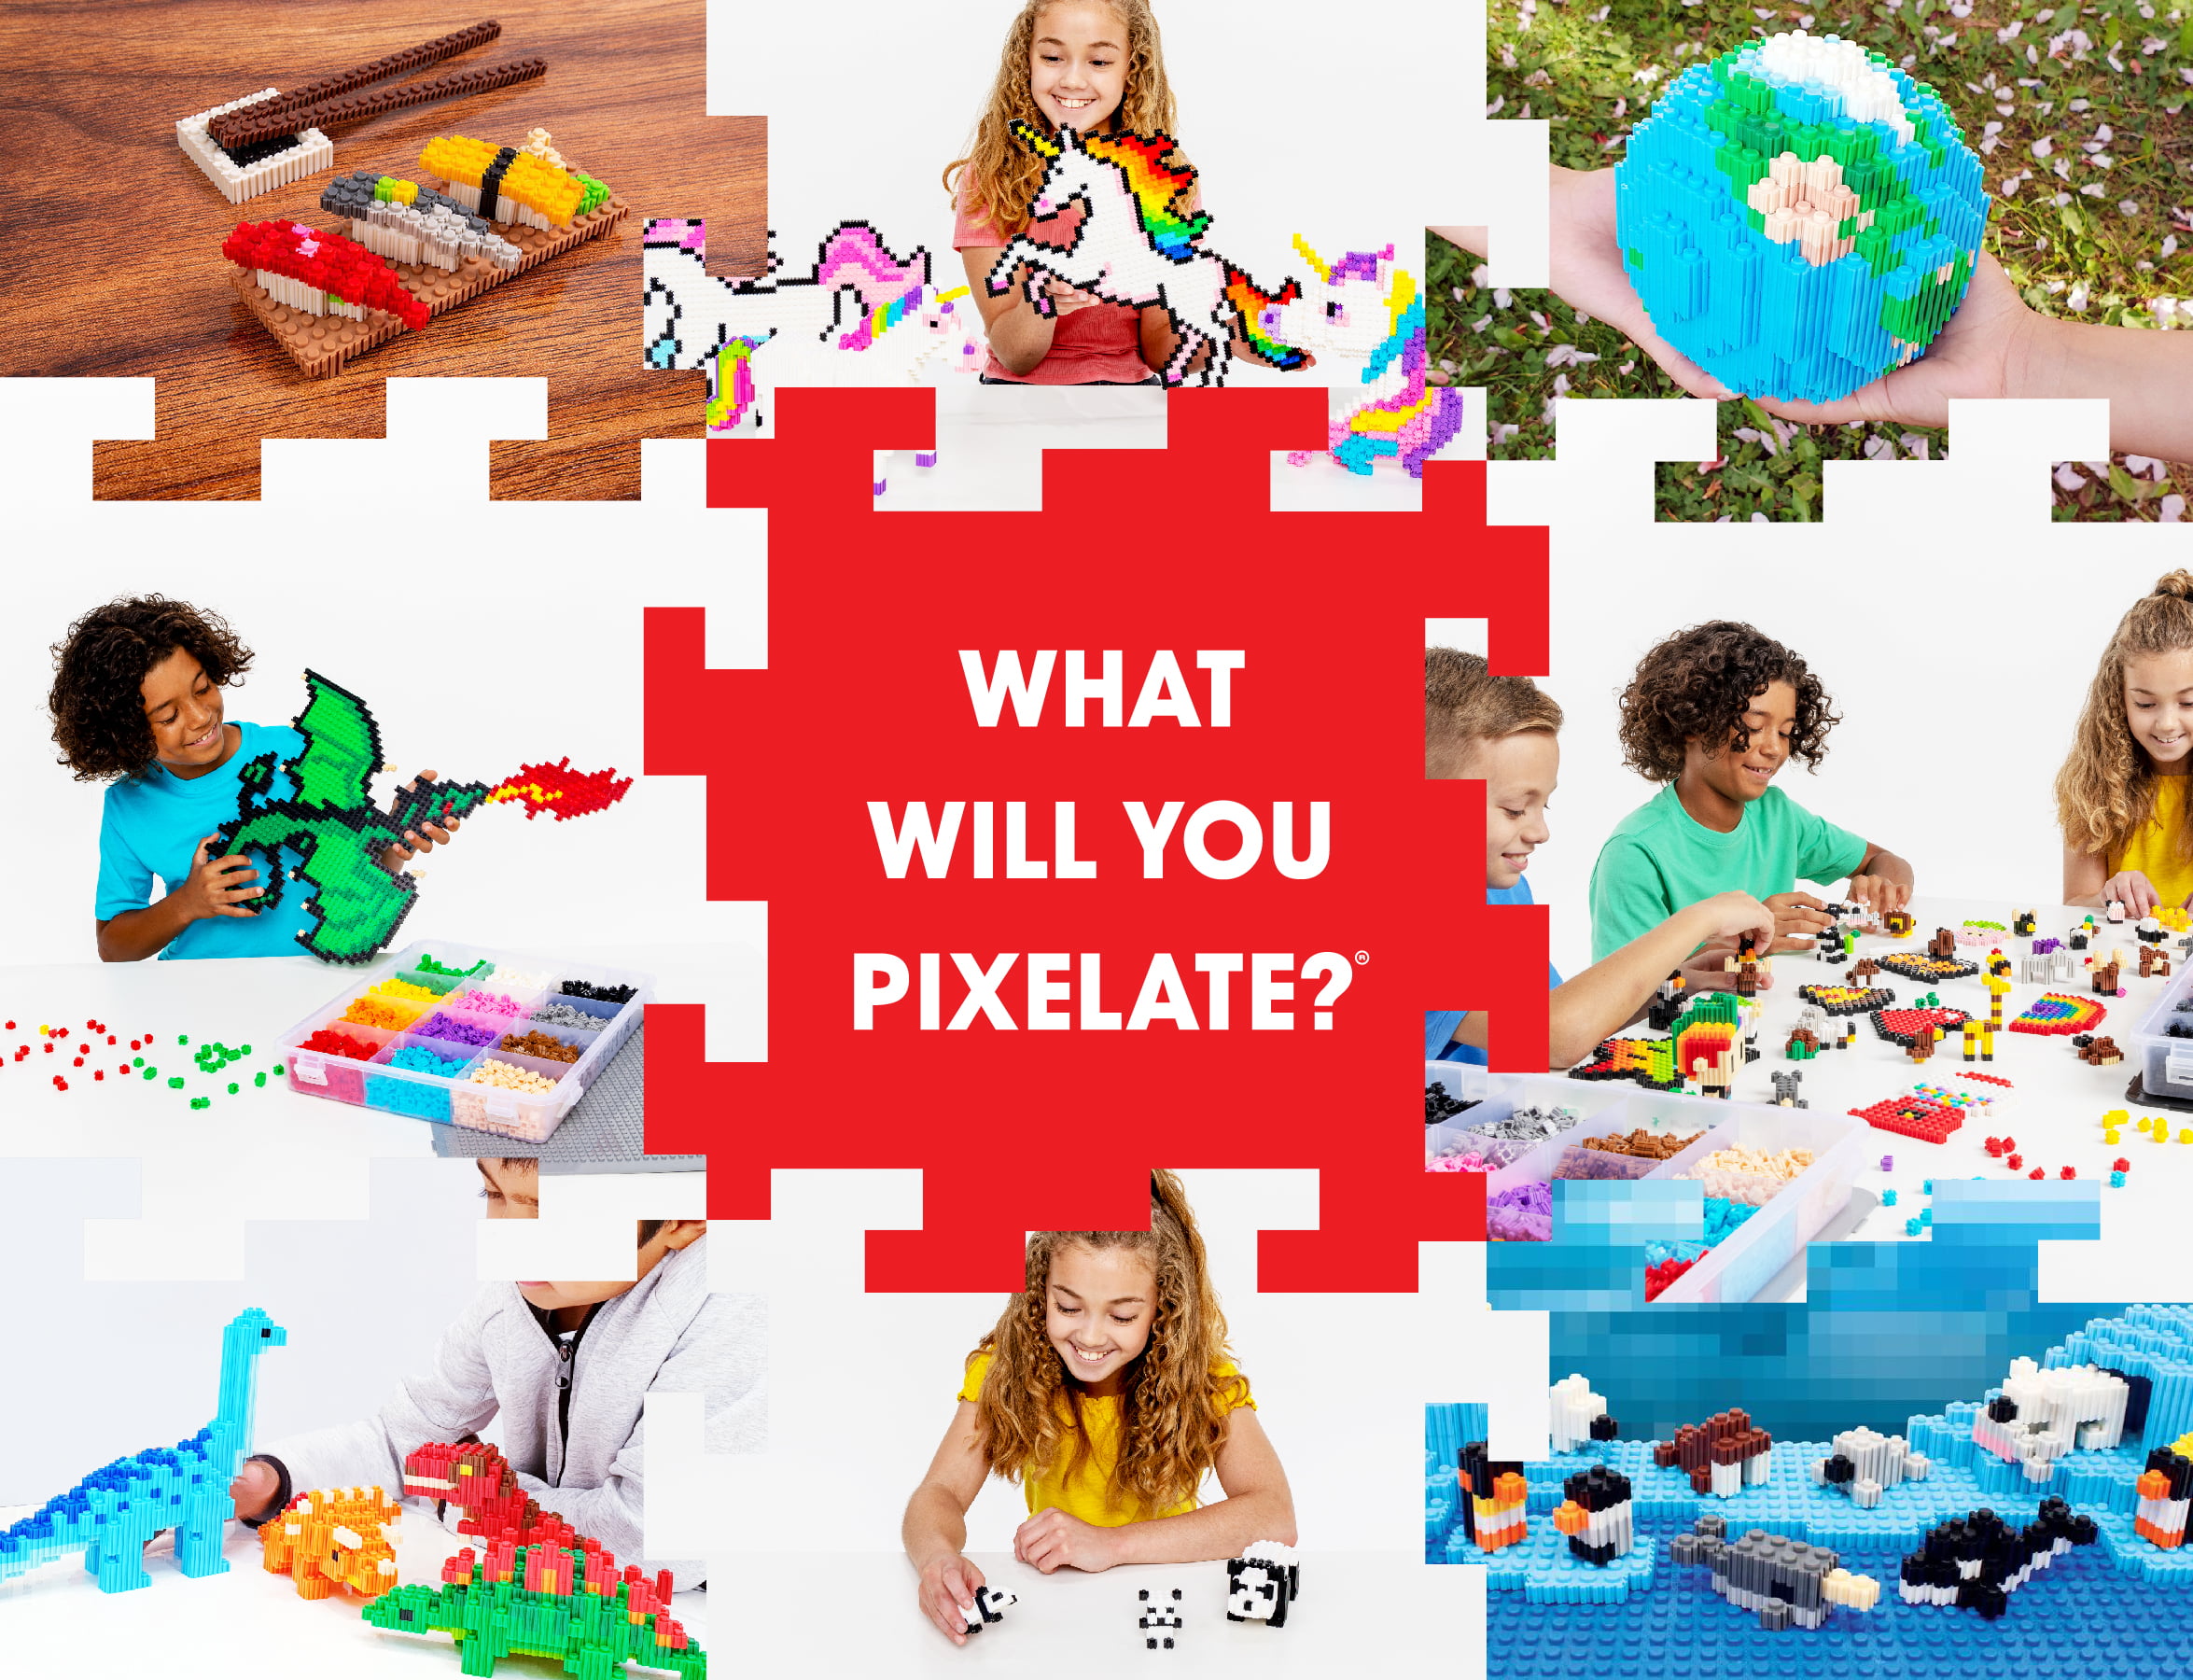  Pix Brix Pixel Art Puzzle Bricks – 6,000 Piece Pixel